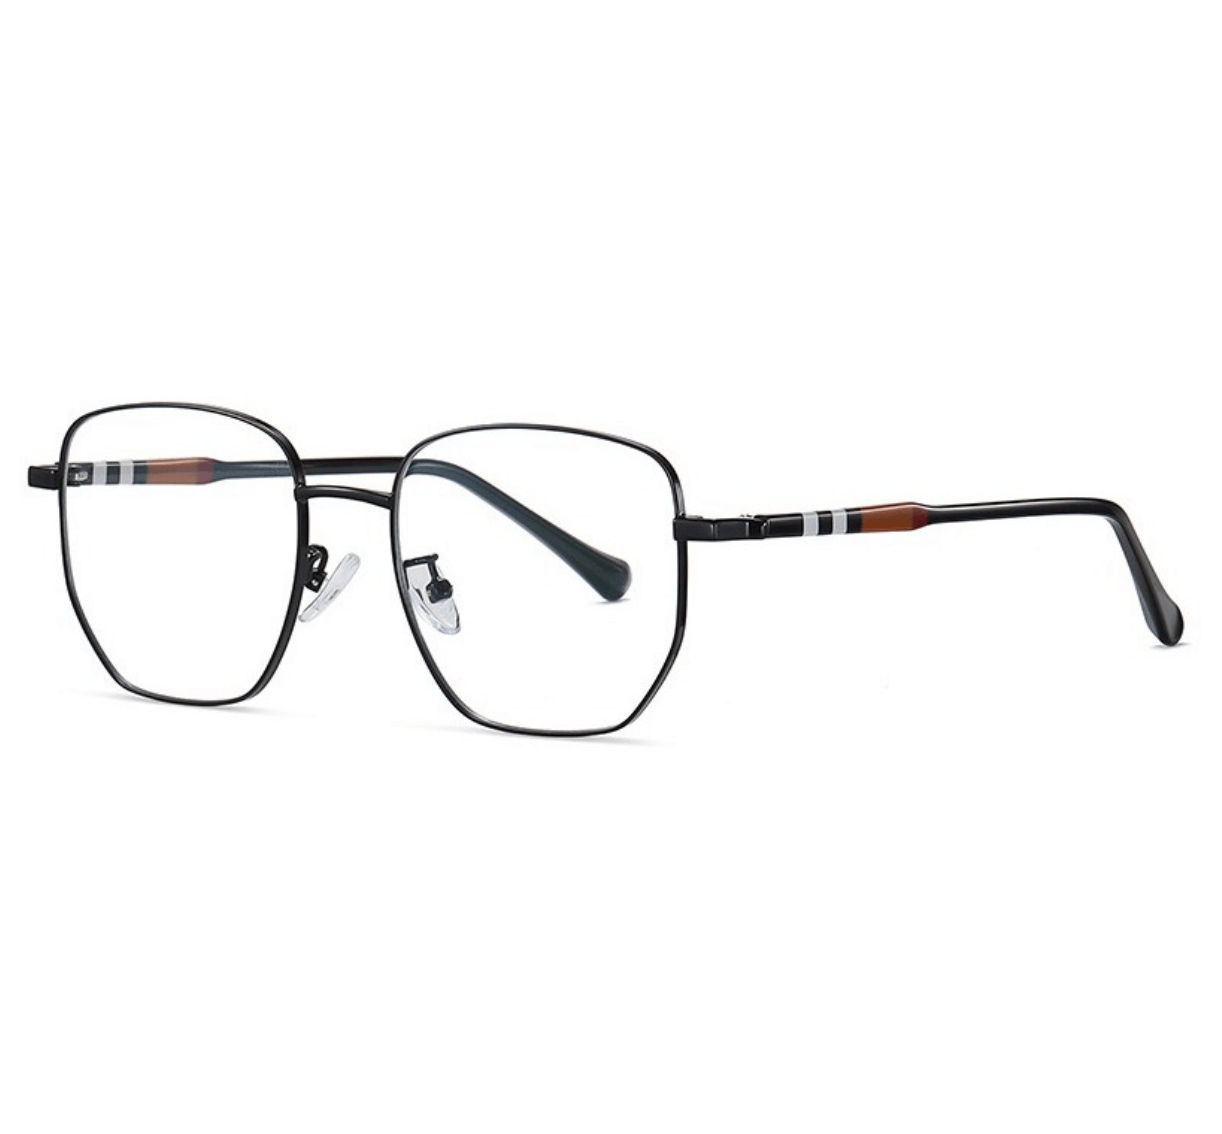 metal black eyewear frame for men and women, Optical frames manufacturer, wholesale glasses frames, custom glasses frames